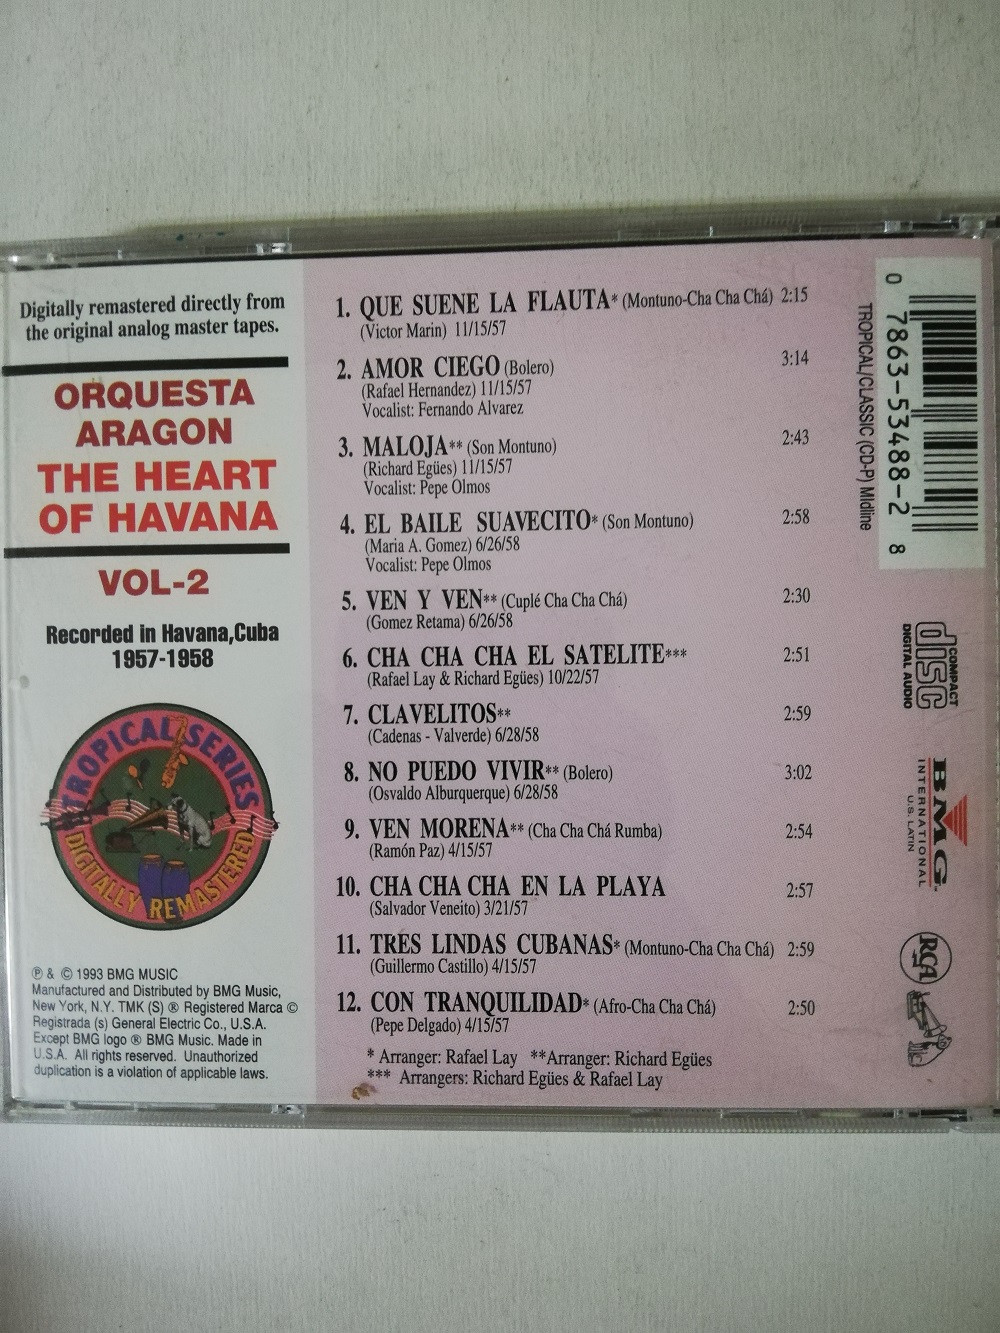 Imagen CD ORQUESTA ARAGÓN - THE HEART OF HAVANA VOL. 2 2